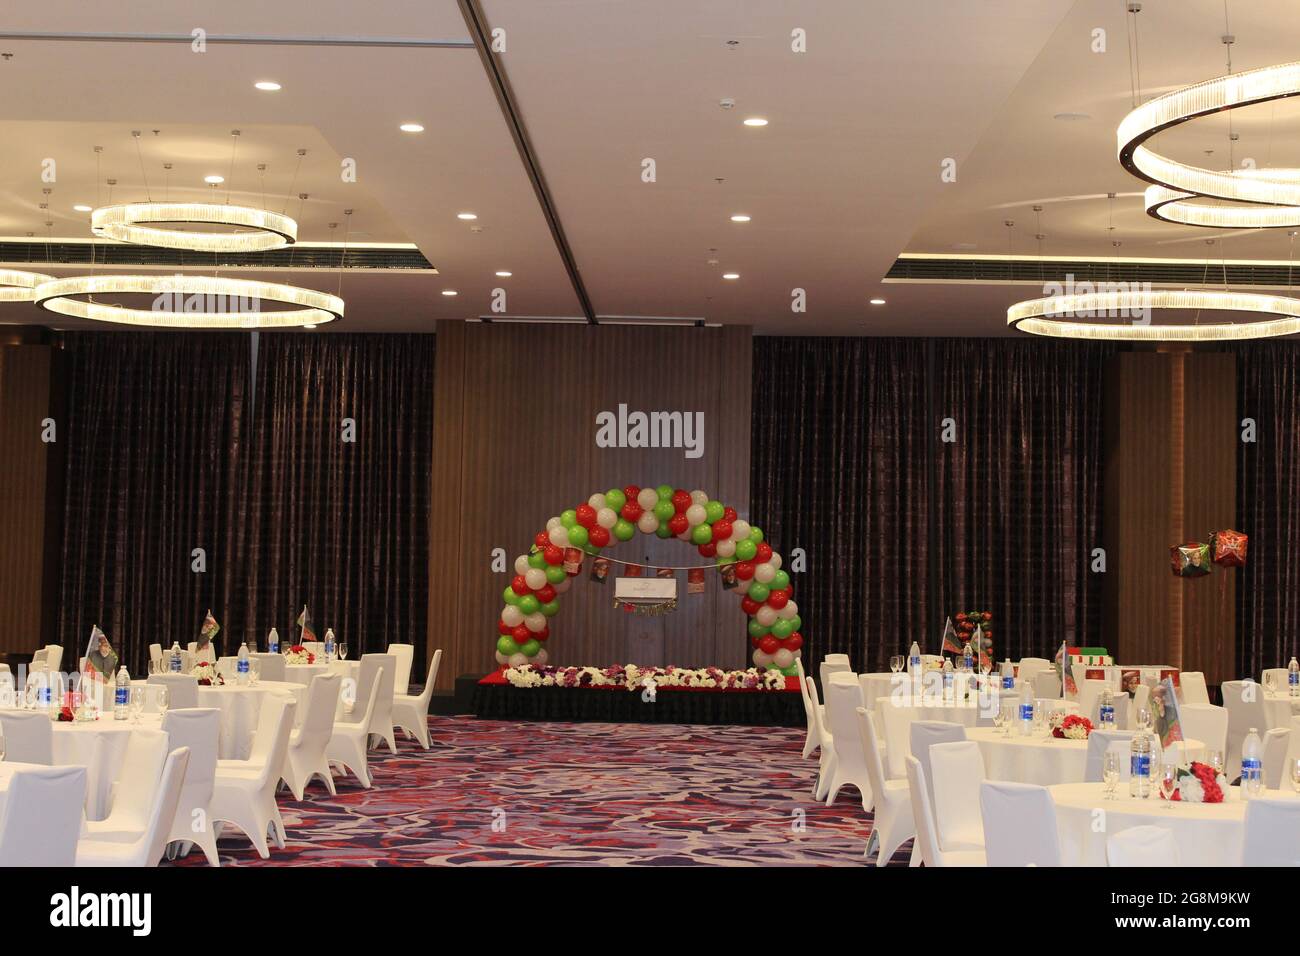 Fraser suites Hôtel cinq étoiles salle de banquet prêt à être célébré pour la Journée nationale d'oman avec des intérieurs magnifiques Banque D'Images